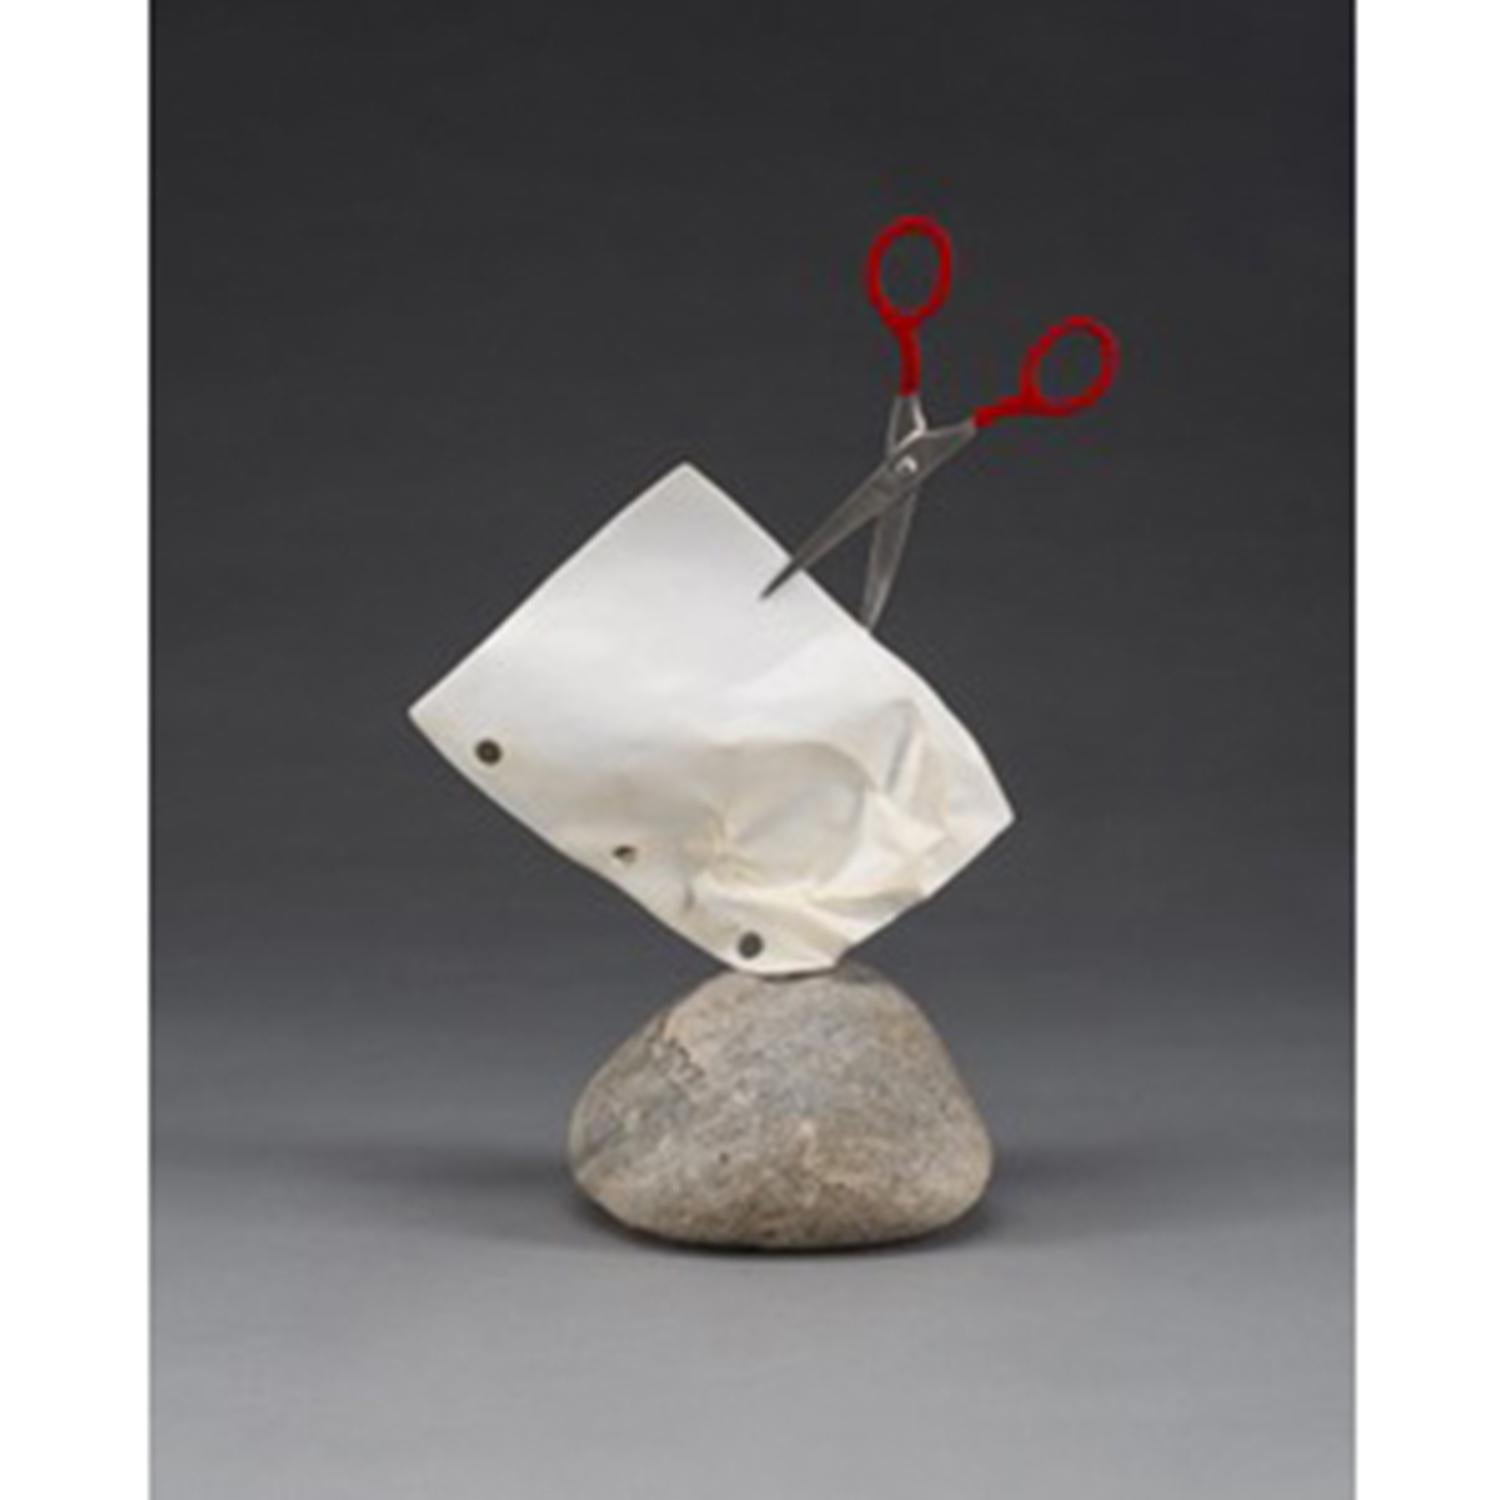 Kevin Box Figurative Sculpture - Stone Paper Scissors (Mini) #66 op/ed 